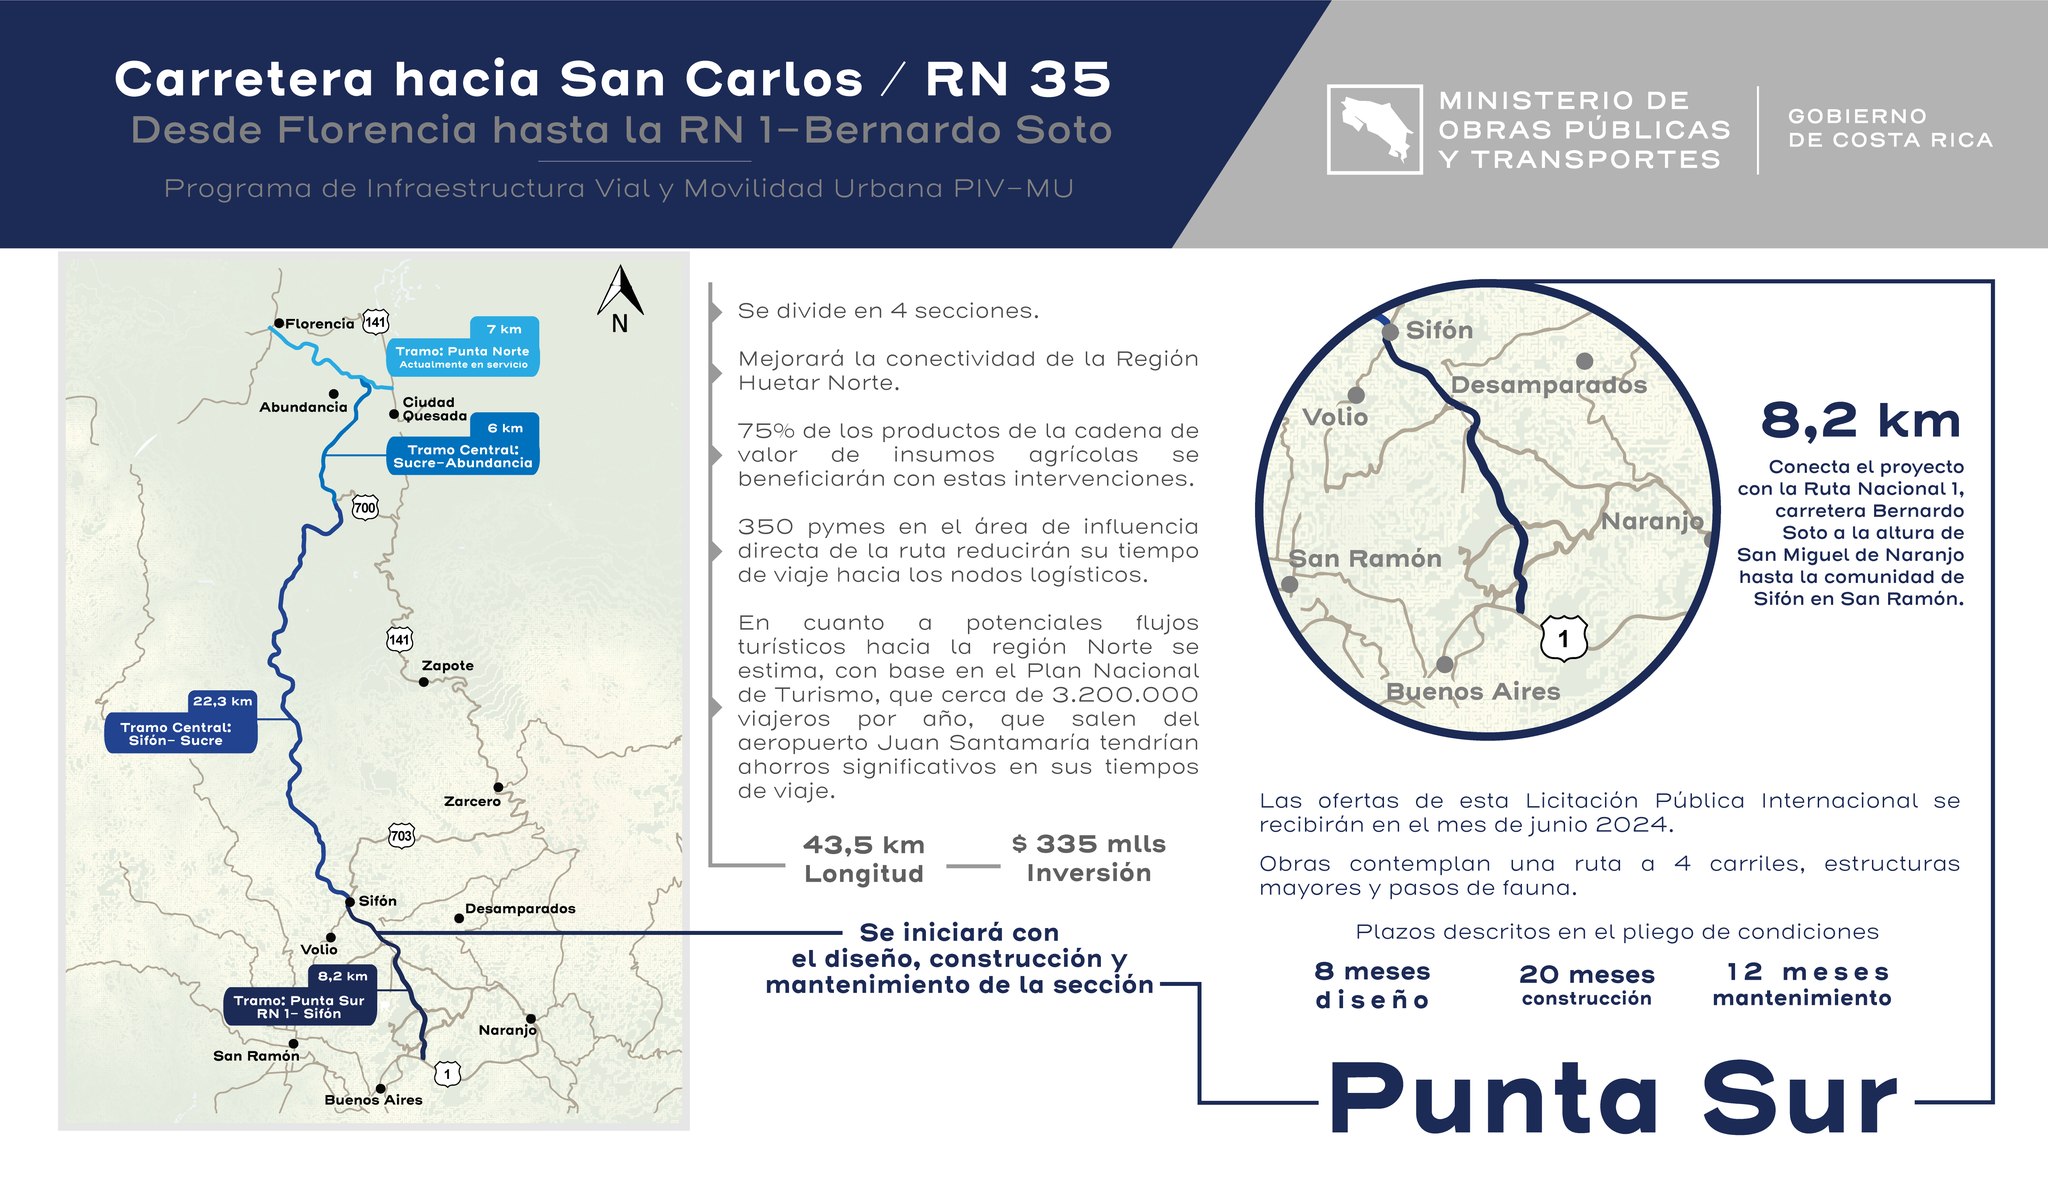 Costa Rica licitará tramo central de carretera a San Carlos a finales de setiembre